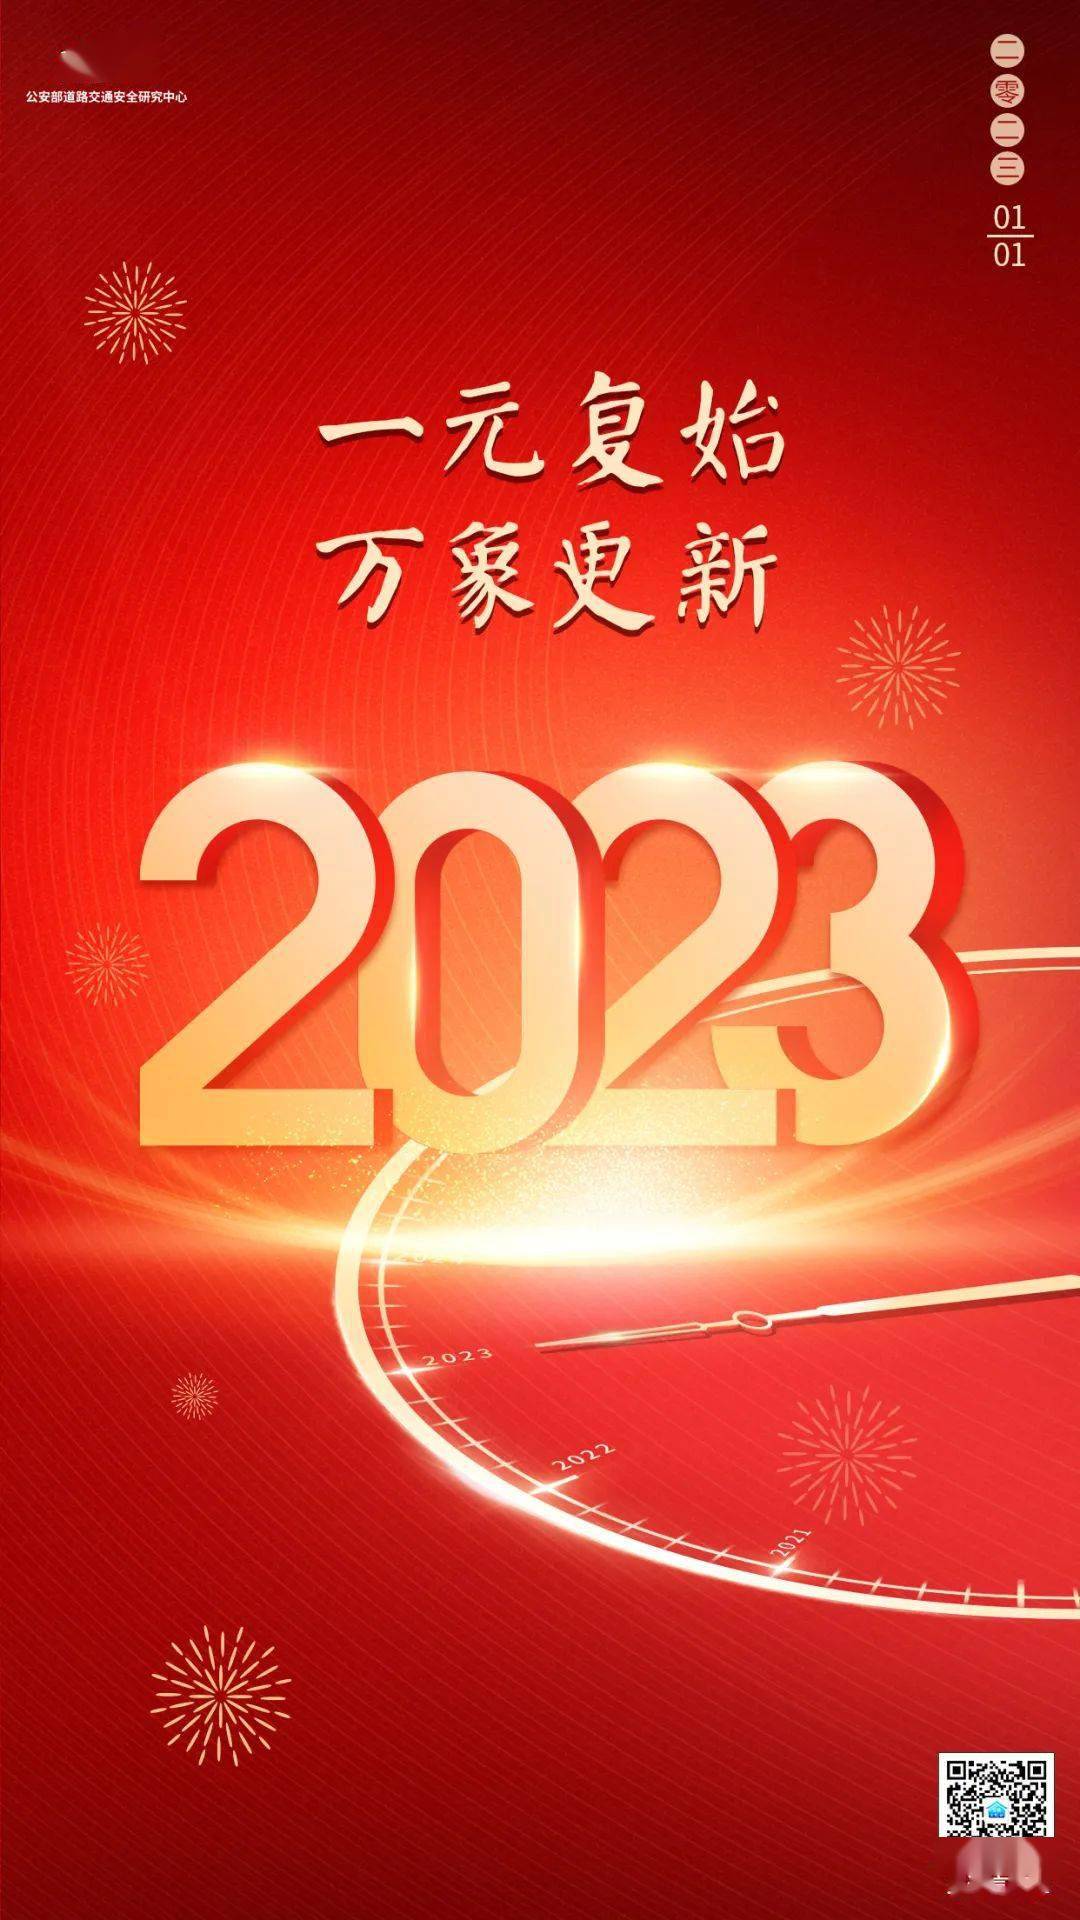 2023年来啦！言究社祝福大家元旦快乐_搜狐汽车_搜狐网 image